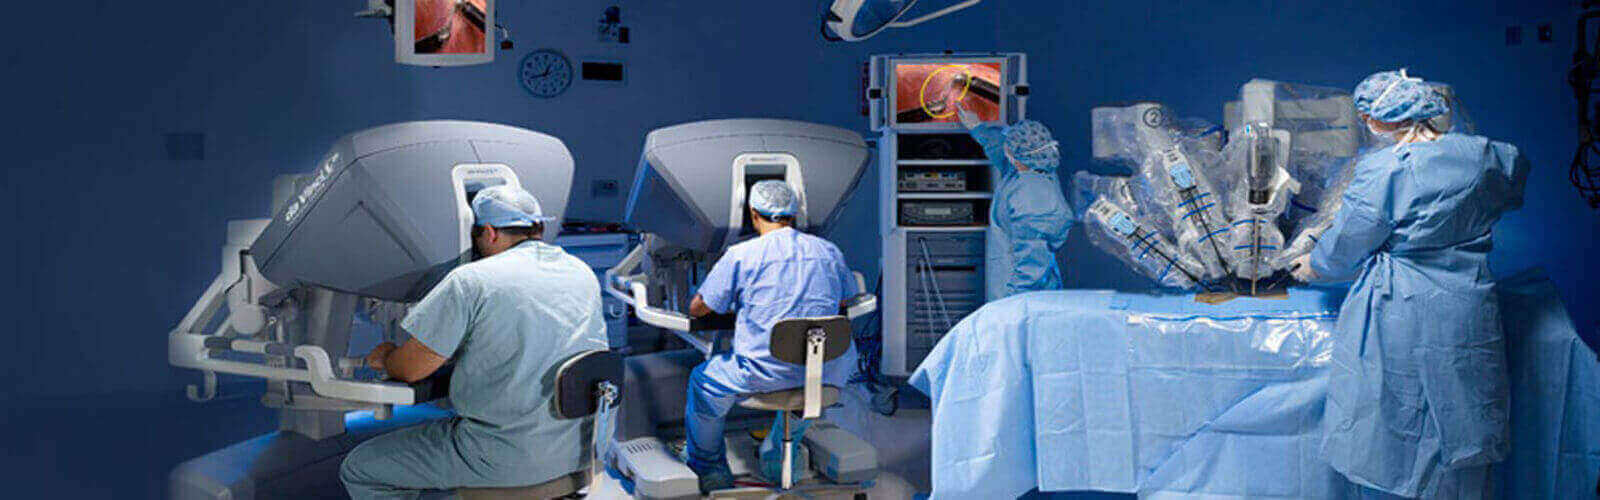 Robotic Surgery in Oman